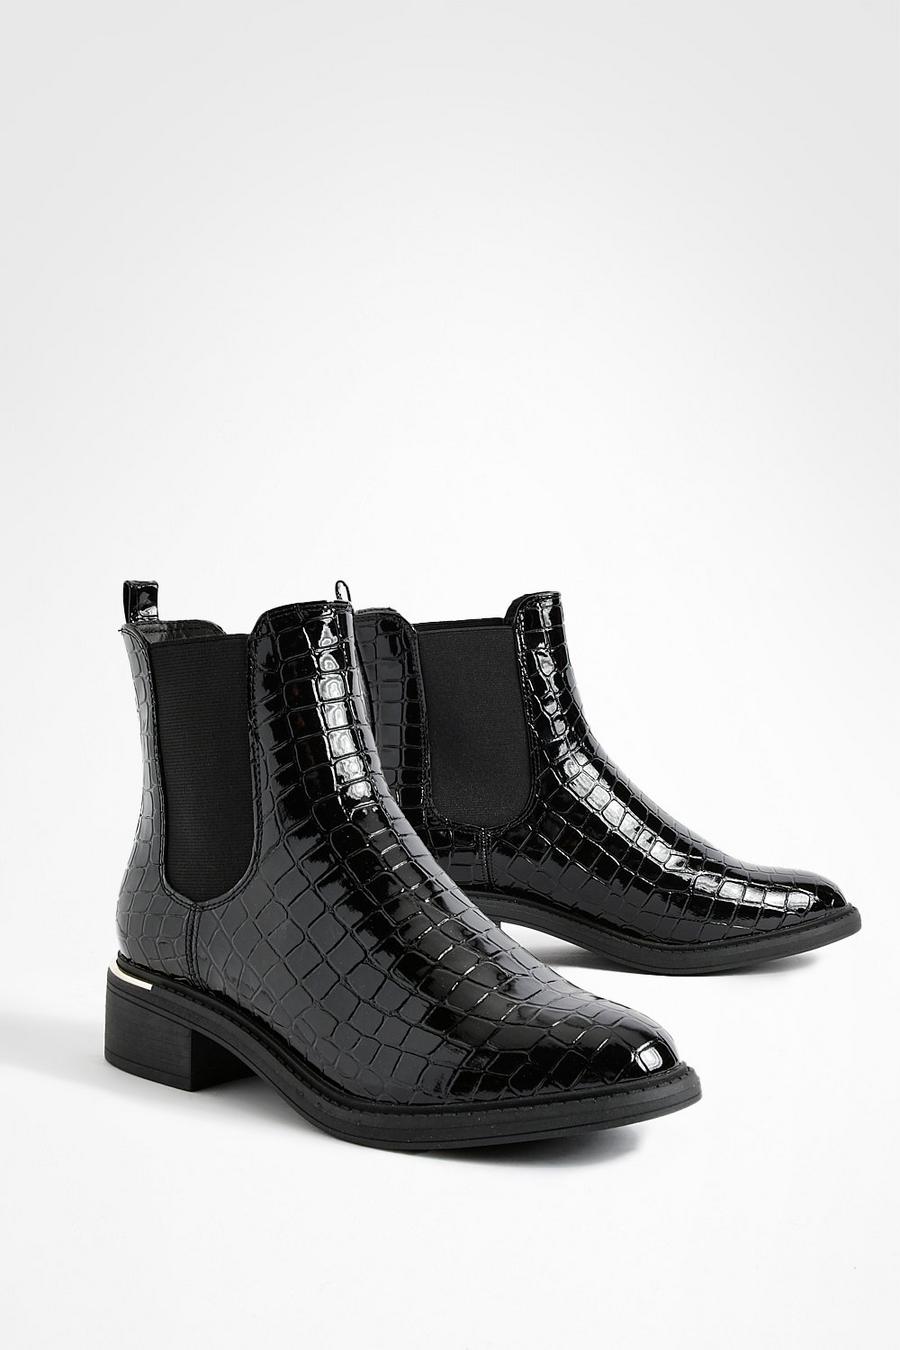 Black Croc Patent Chelsea Boots